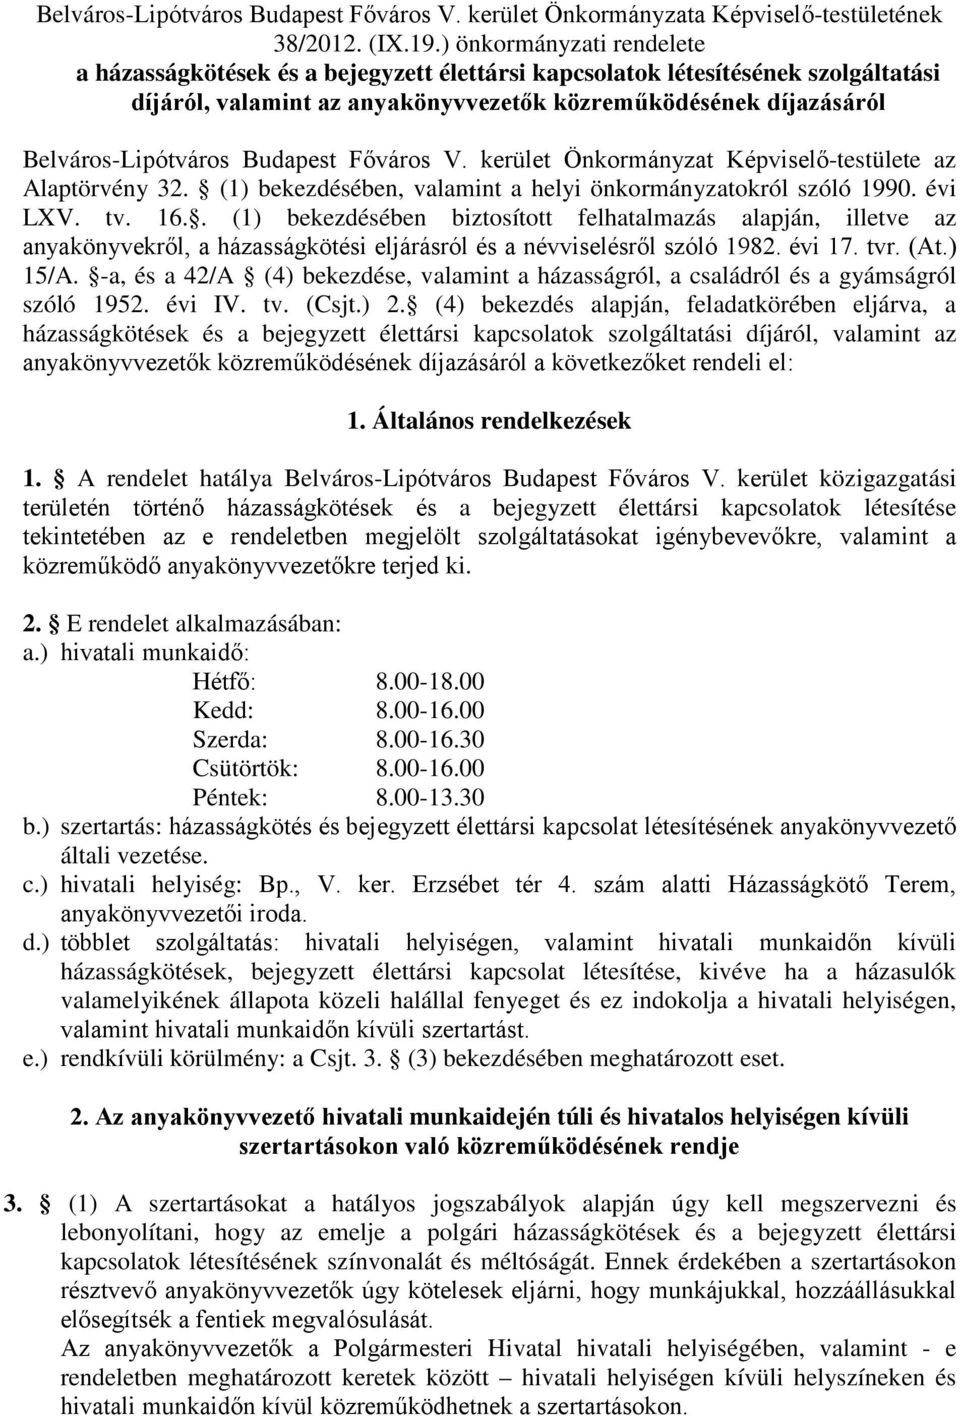 Budapest Főváros V. kerület Önkormányzat Képviselő-testülete az Alaptörvény 32. (1) bekezdésében, valamint a helyi önkormányzatokról szóló 1990. évi LXV. tv. 16.